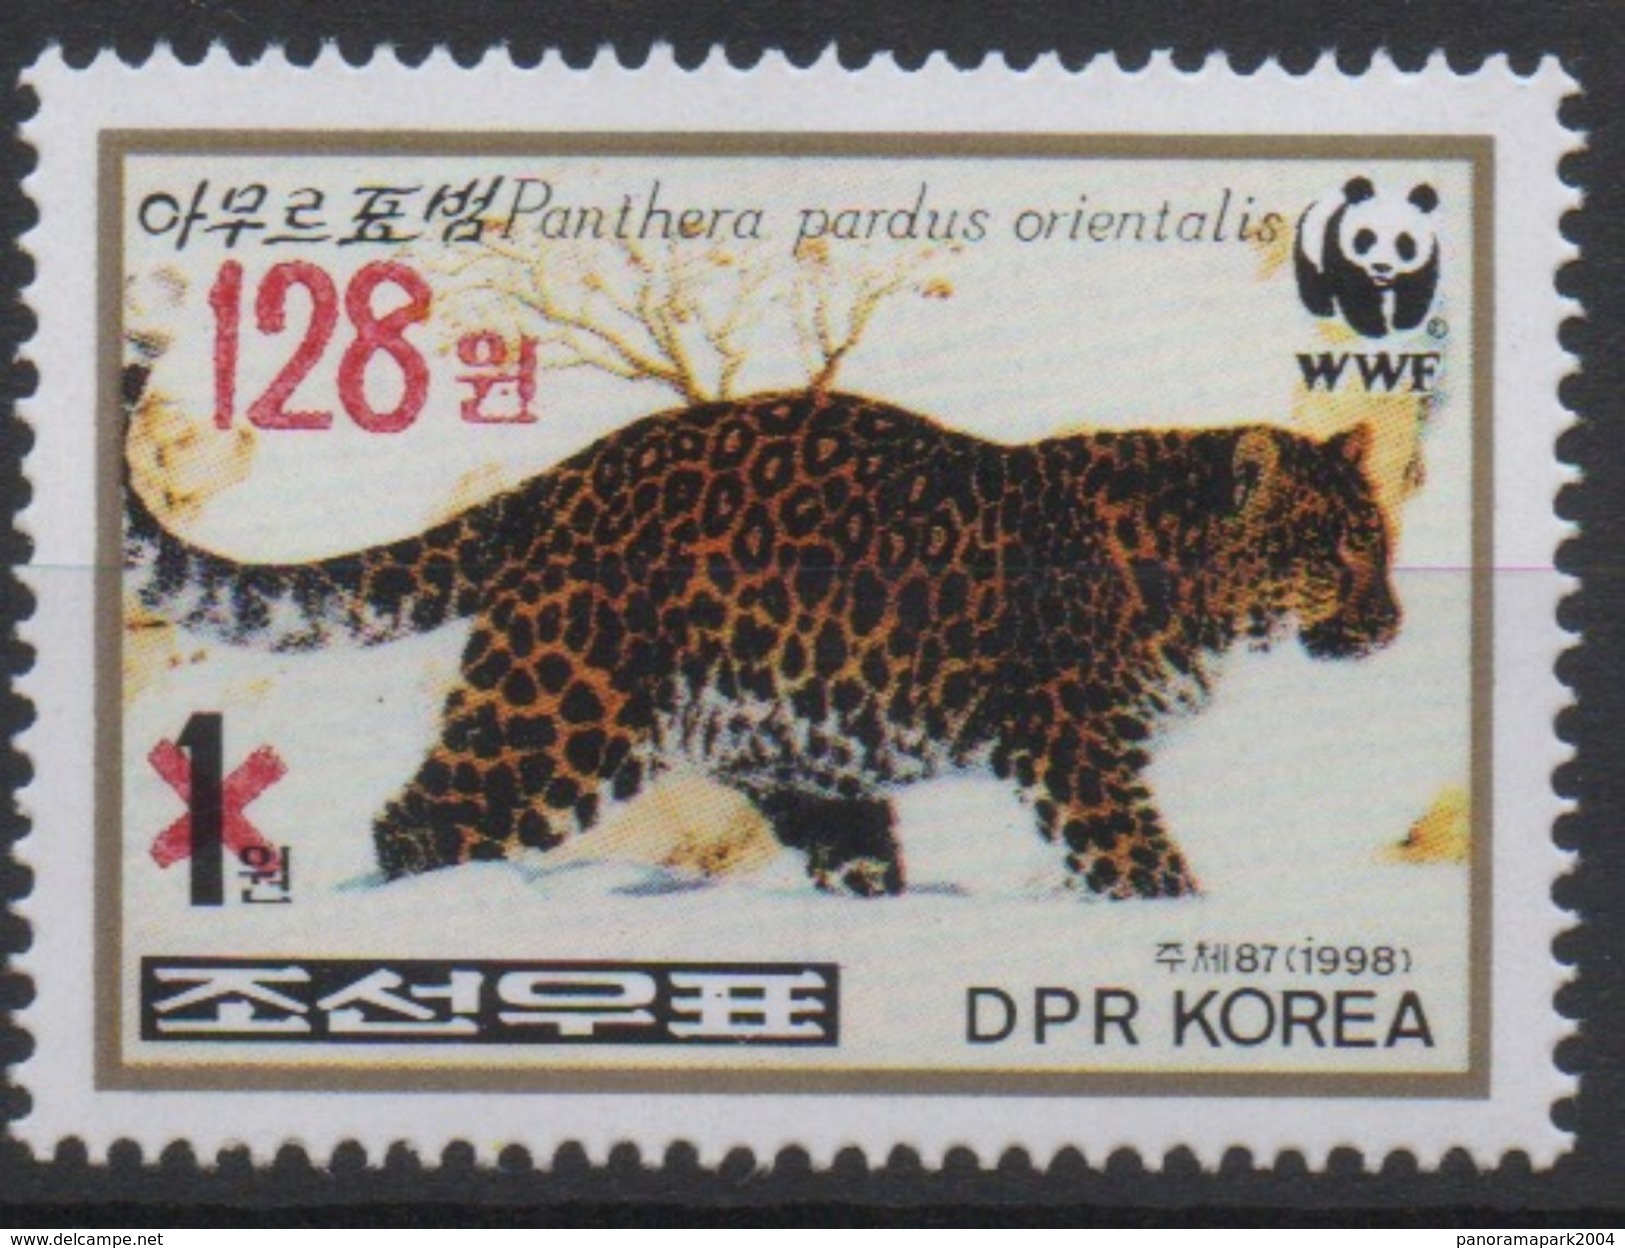 North Korea Corée Du Nord 2006 Mi. 5102 Surchargé Rouge RED OVERPRINT Faune Fauna Panther Panthère Leopard WWF MNH** RAR - Raubkatzen